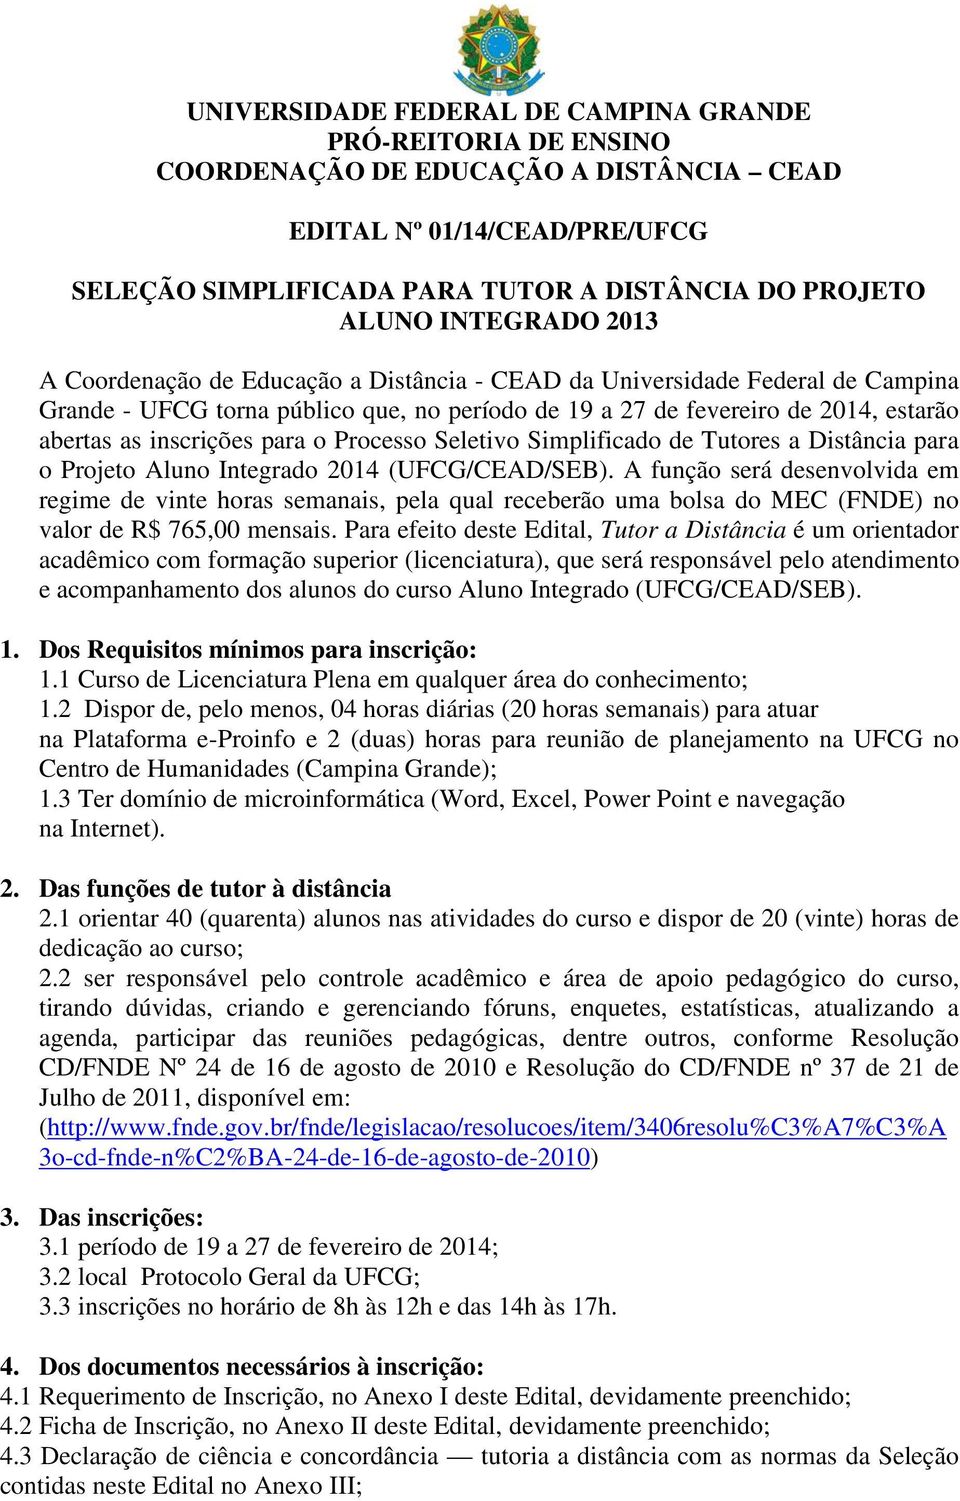 inscrições para o Processo Seletivo Simplificado de Tutores a Distância para o Projeto Aluno Integrado 2014 (UFCG/CEAD/SEB).